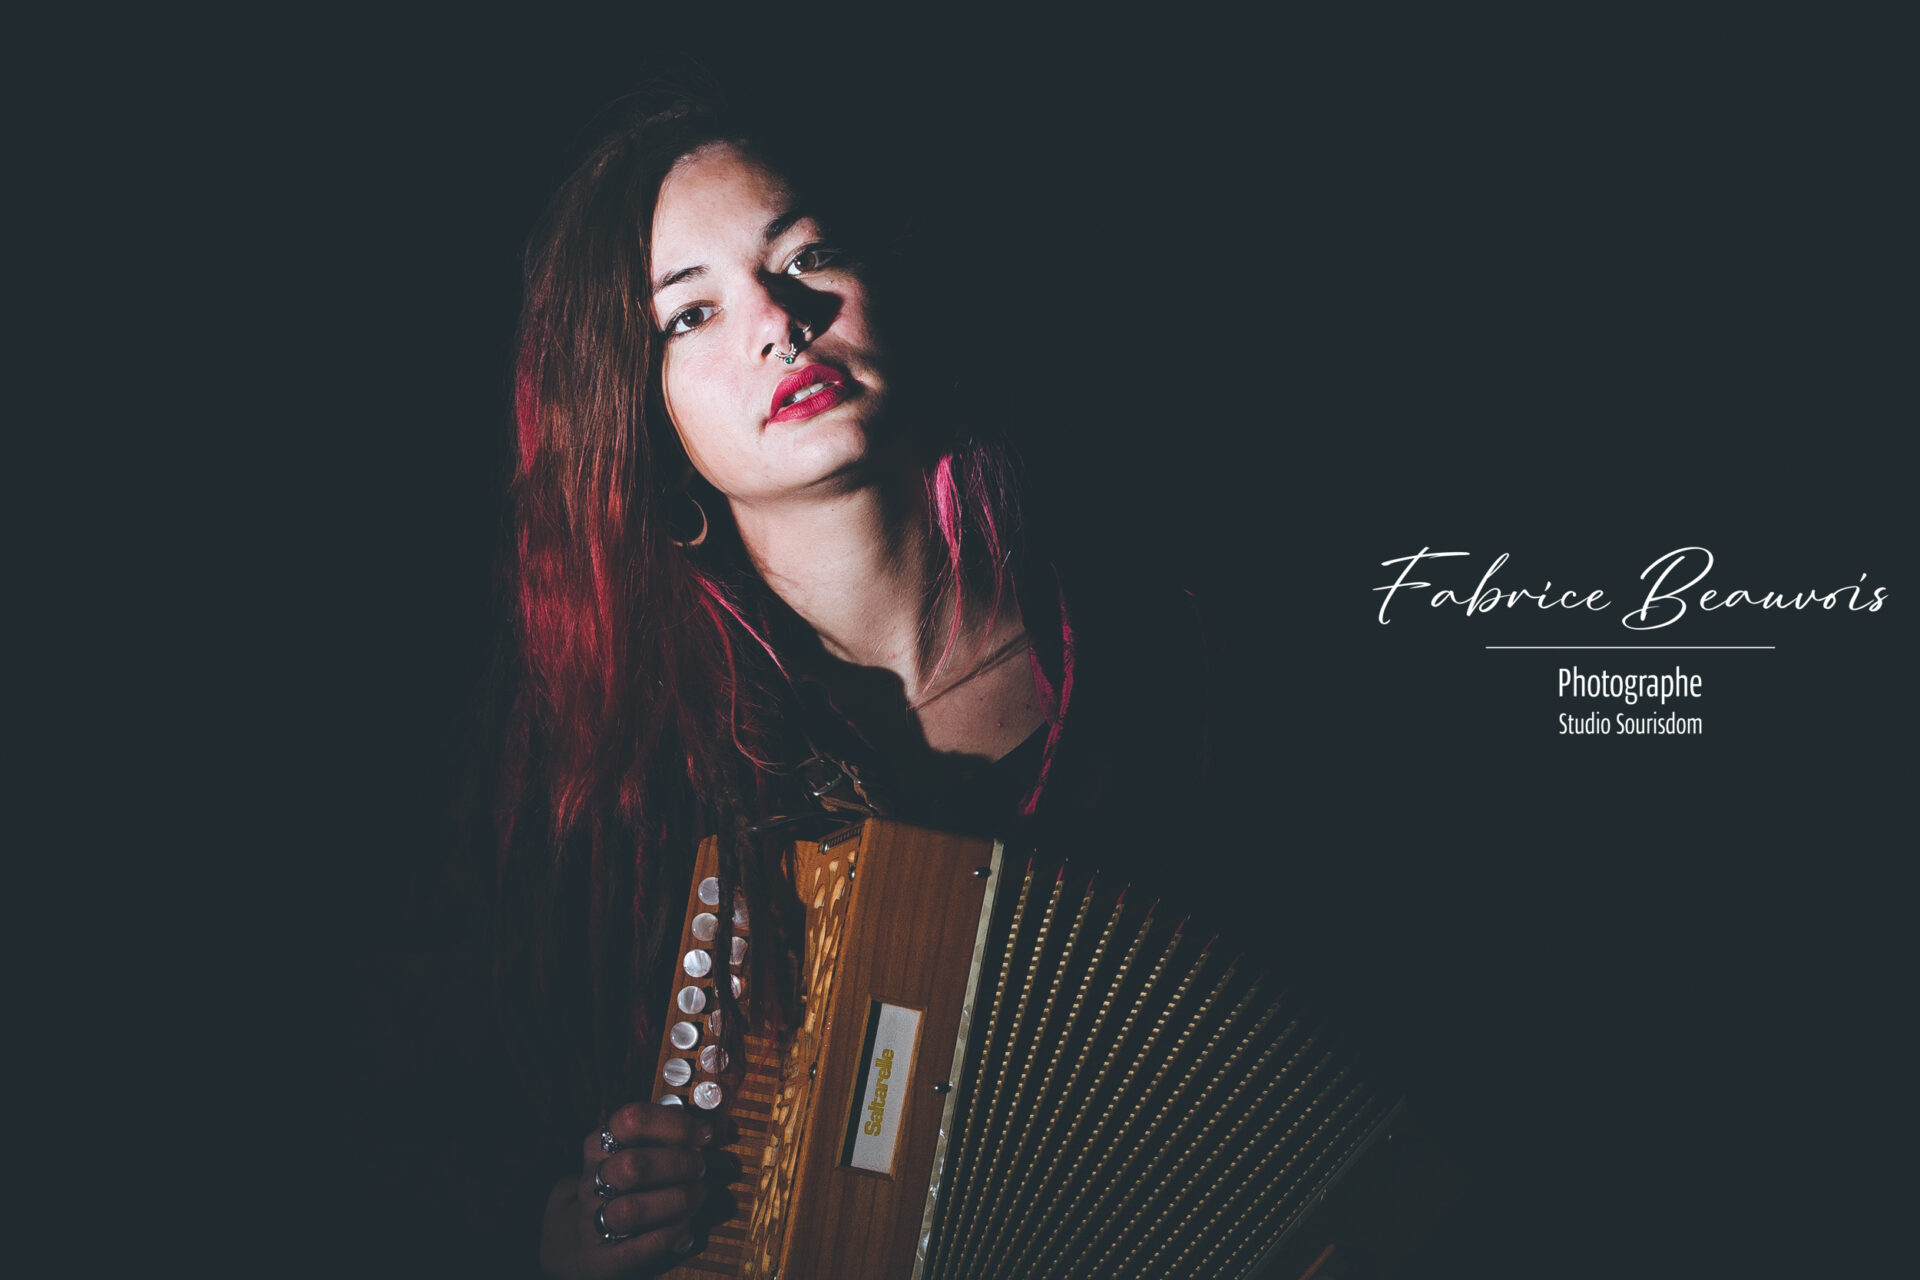 La jeune fille à l'accordéon, portrait en clair obscur